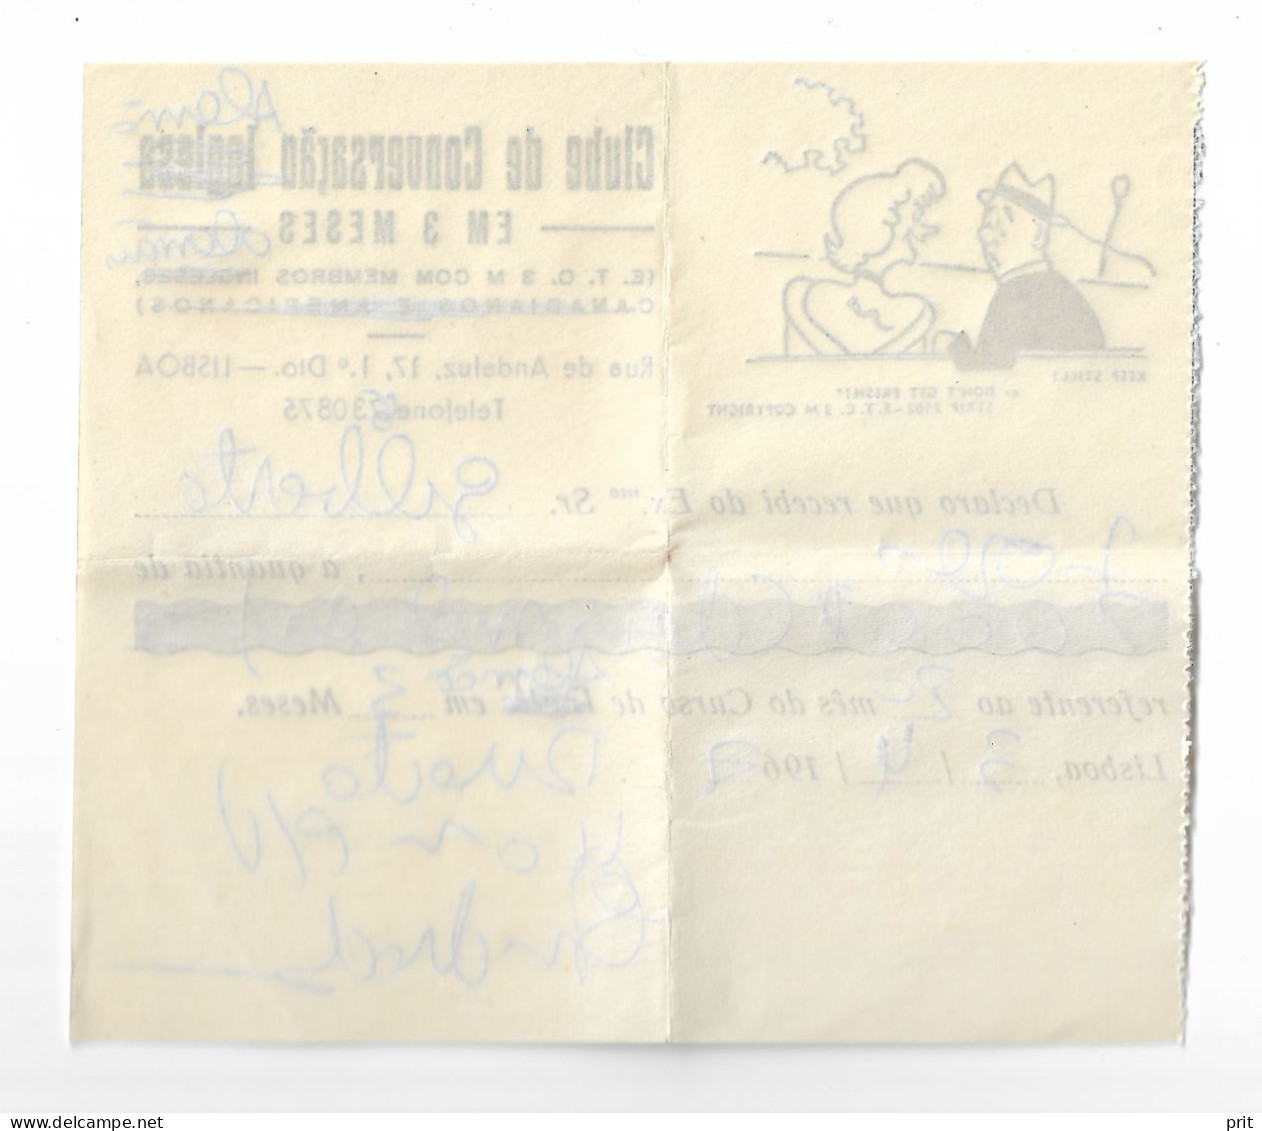 Clube De Conversação Inglesa/alemão Em 3 Meses Lisboa Lisbon Portugal 1967 Vintage Language School Bill Invoice - Portogallo